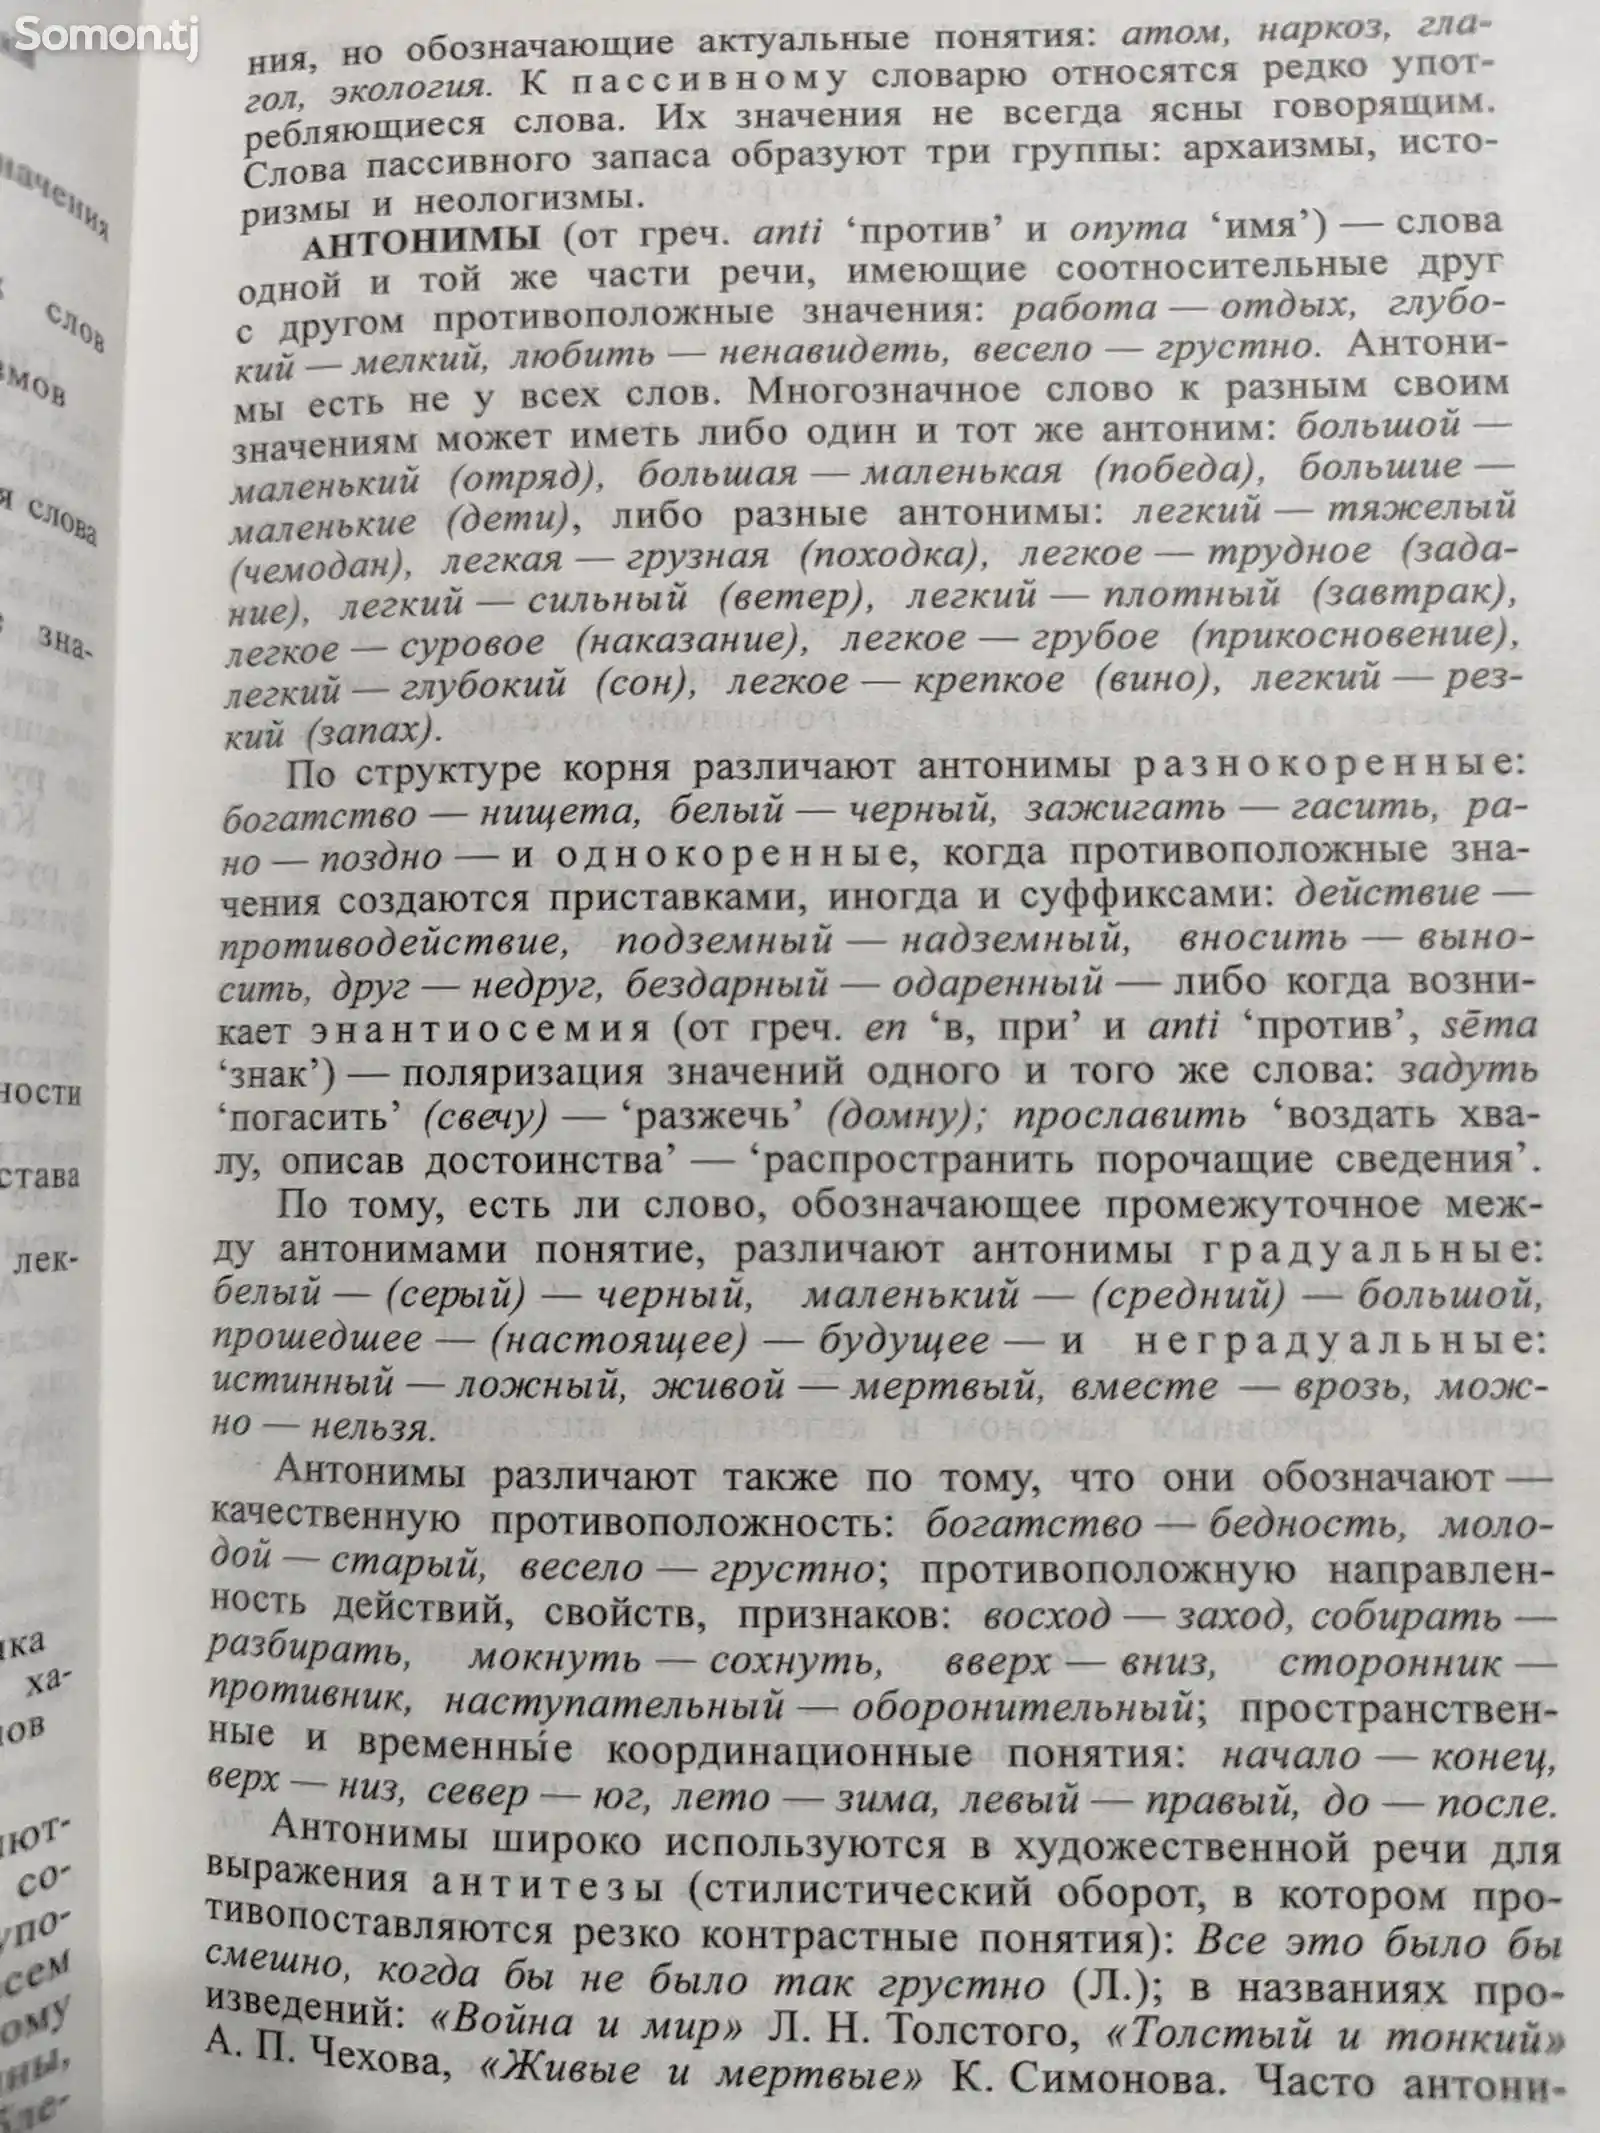 Современный русский язык, словарь - справочник, 2004 год, 302 ст-3